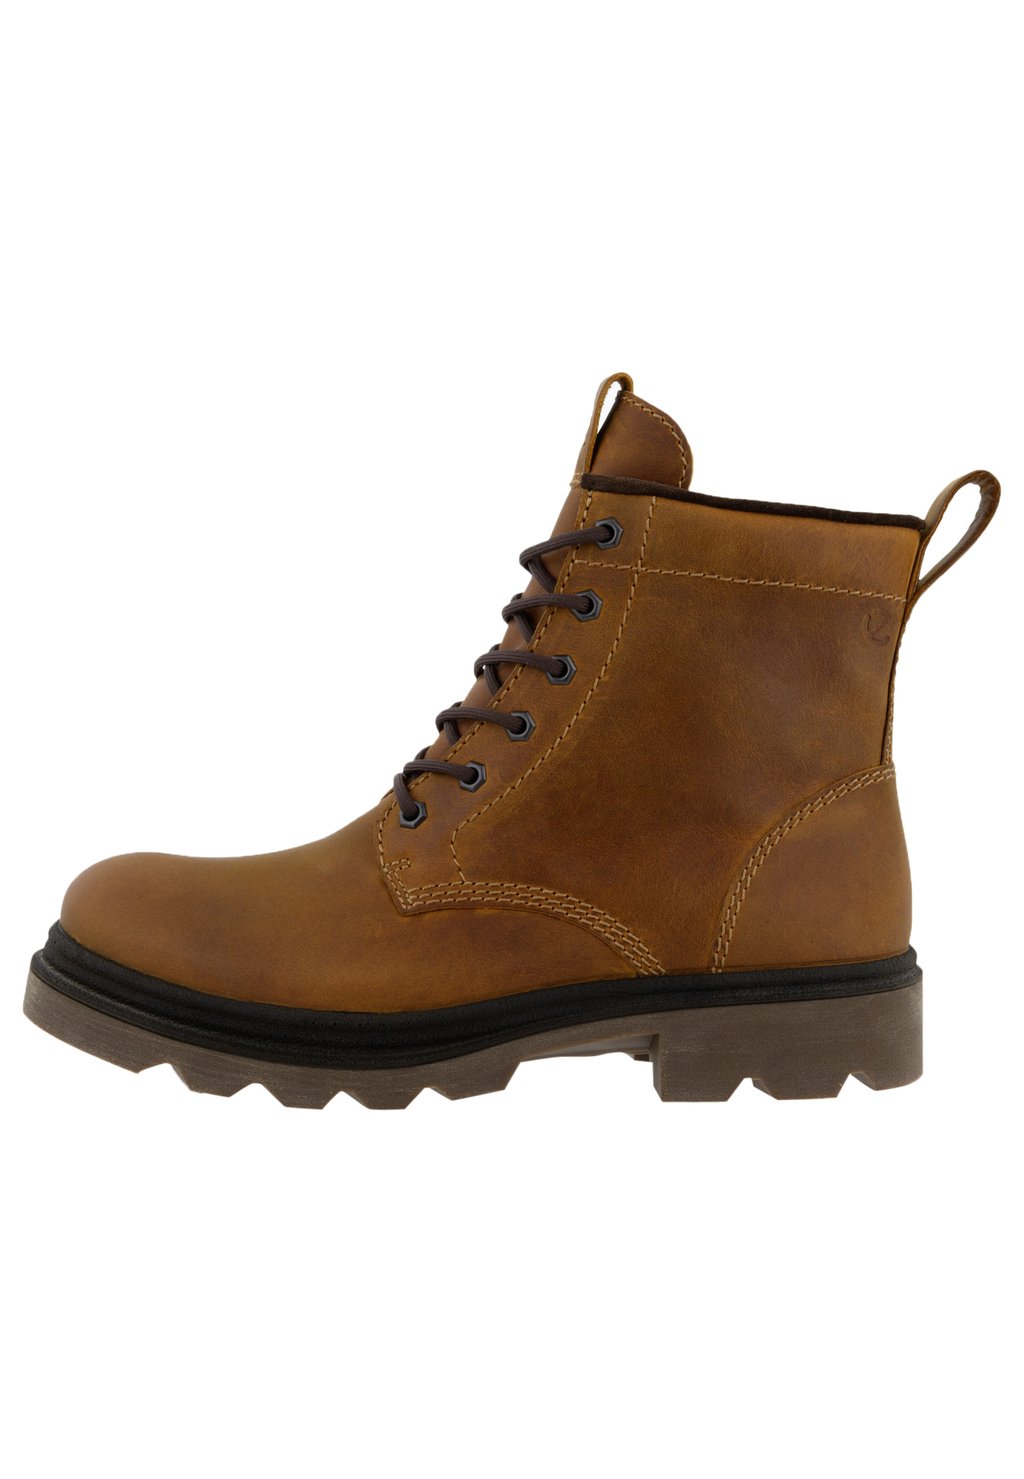 Зимние ботинки Grainer ECCO, коричневый ботинки мужские ecco grainer коричневый